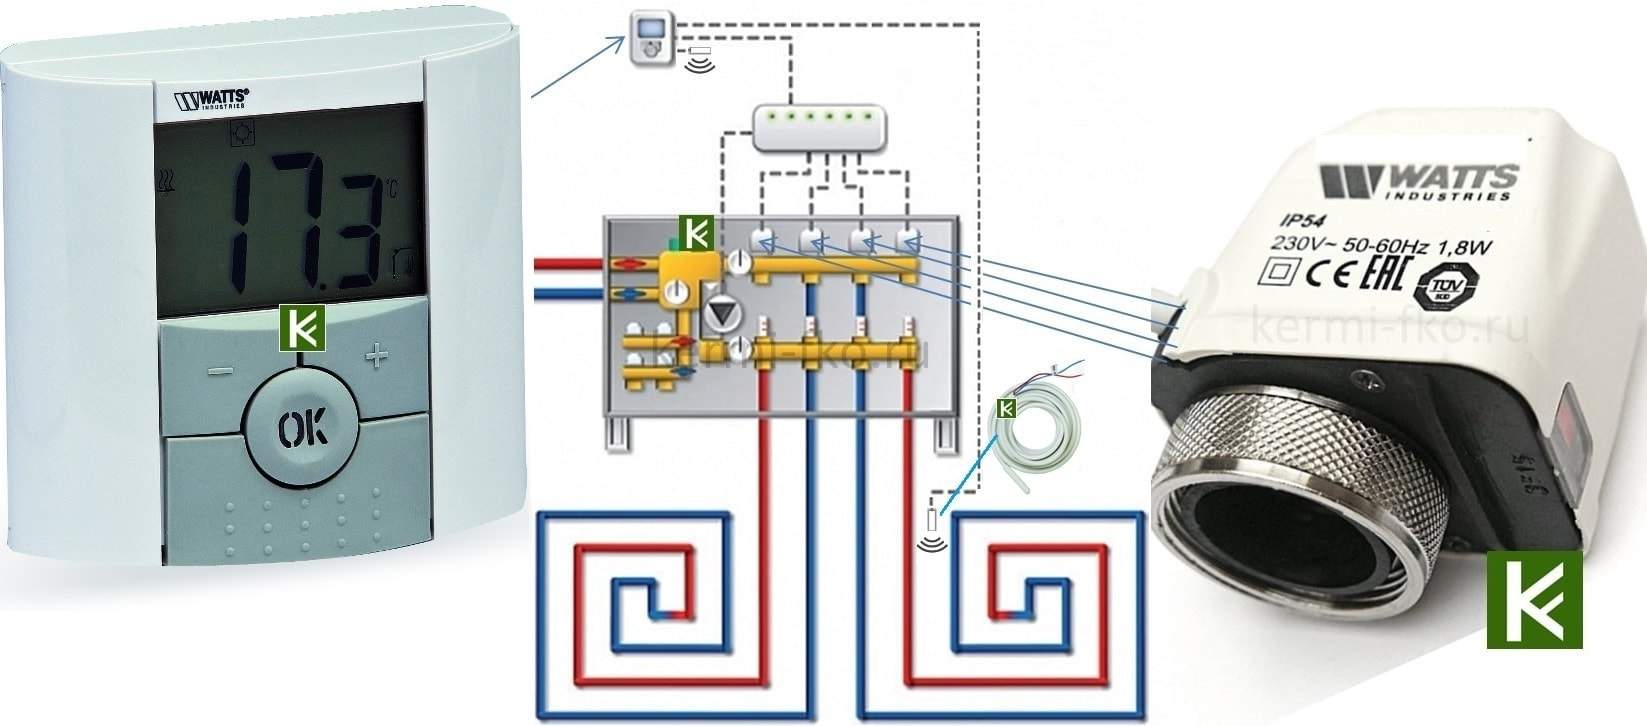 10025806 BTD Watts Автоматика для теплого пола водяного купить термостат сервопривод датчик для теплого пола фото цена Москва умный дом